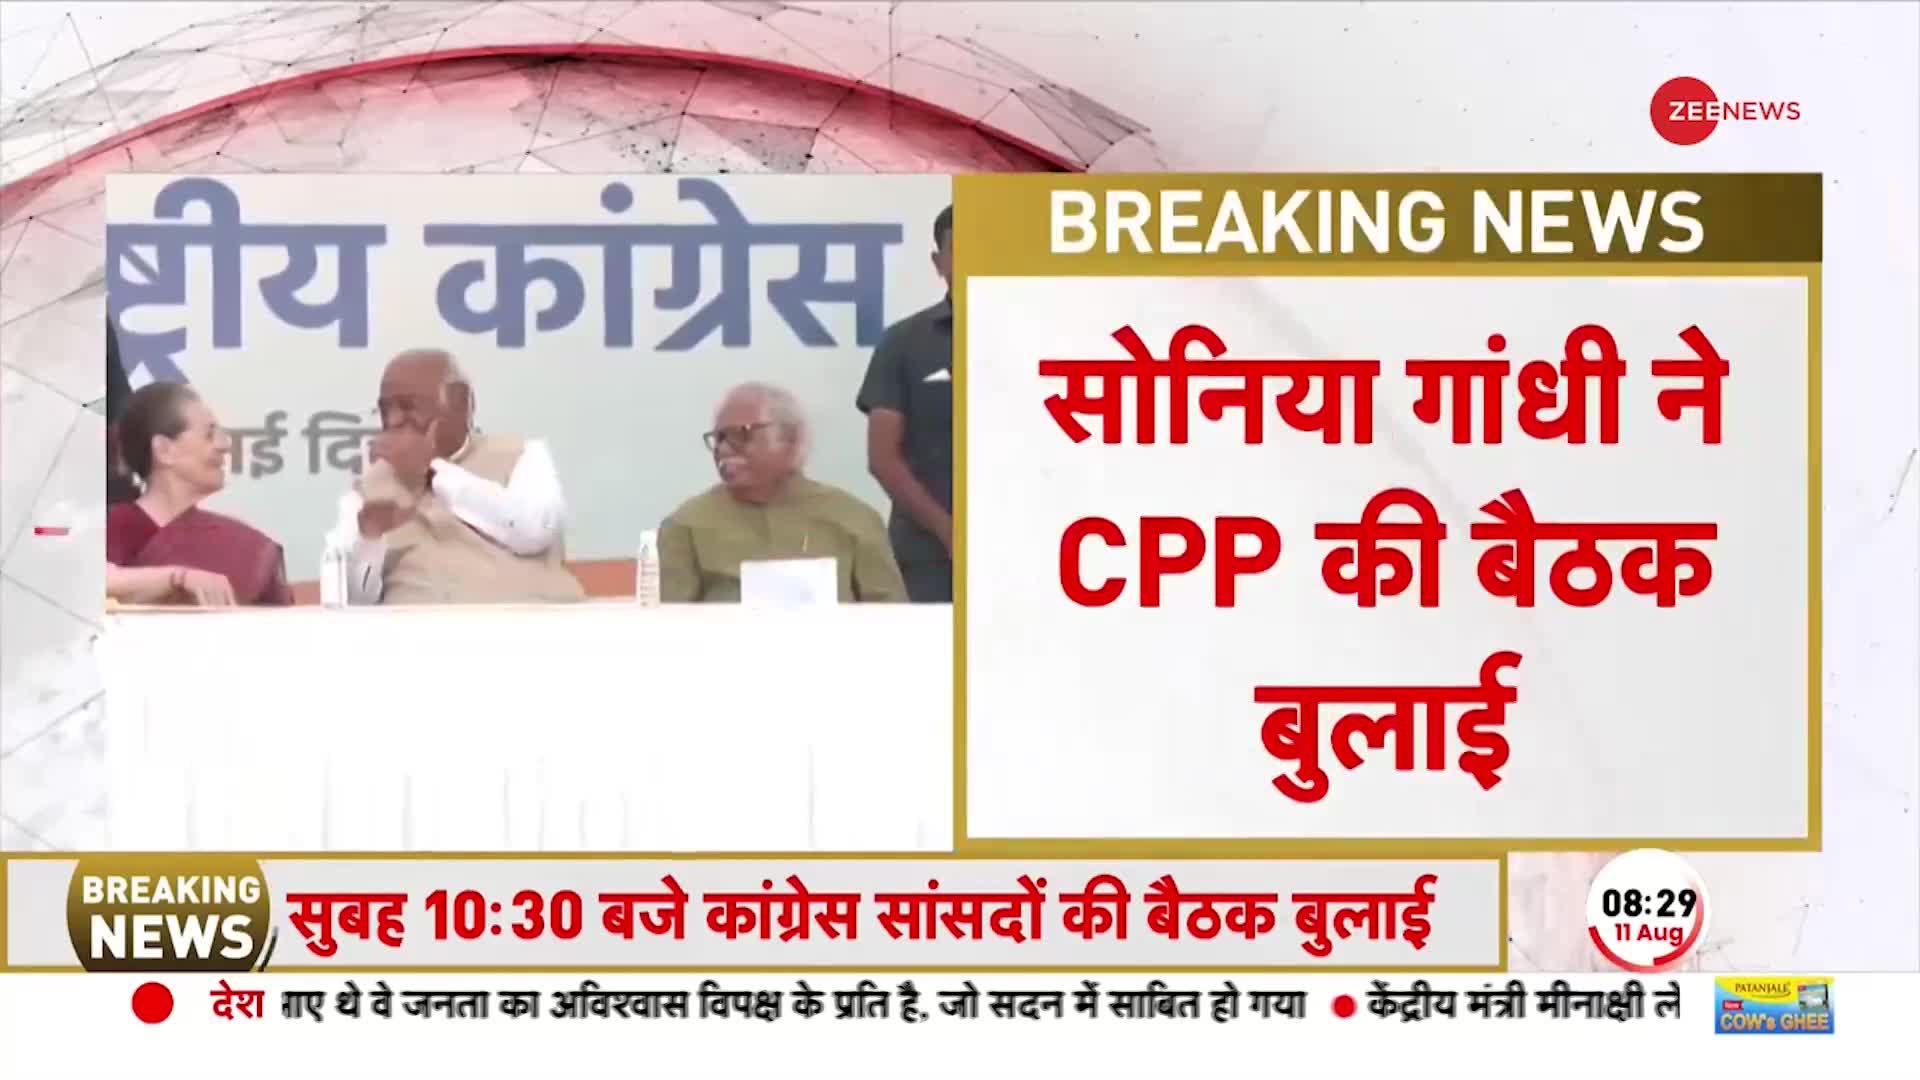 Sonia Gandhi ने बुलाई CPP की बैठक, Adhir Ranjan Chowdhury के निलंबन को लेकर होगी चर्चा